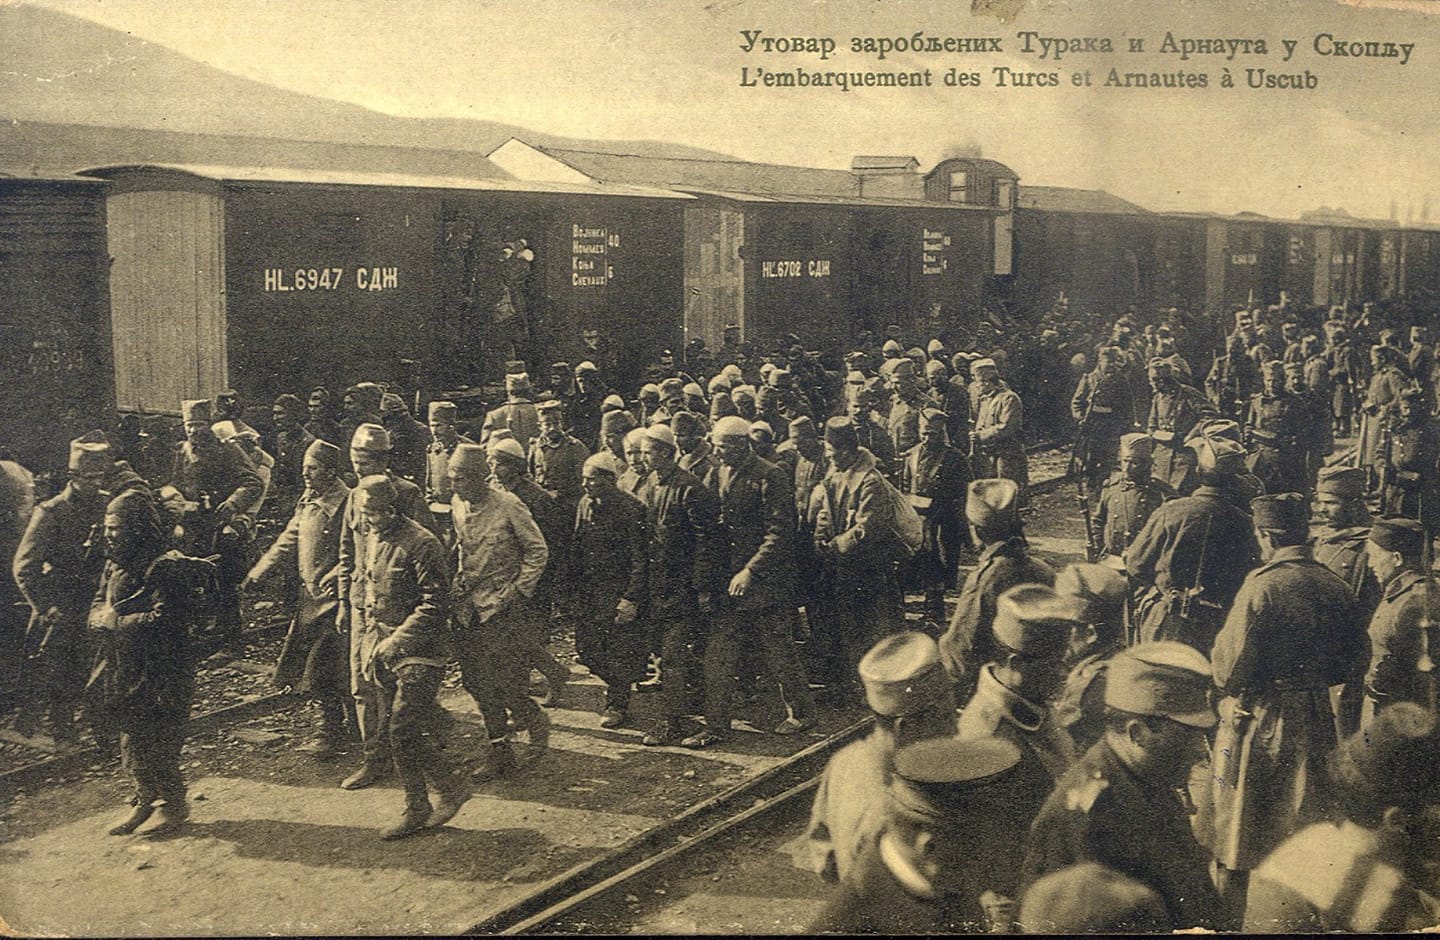 Утовар заробљених Турака и Арнаута у Скопљу.jpg